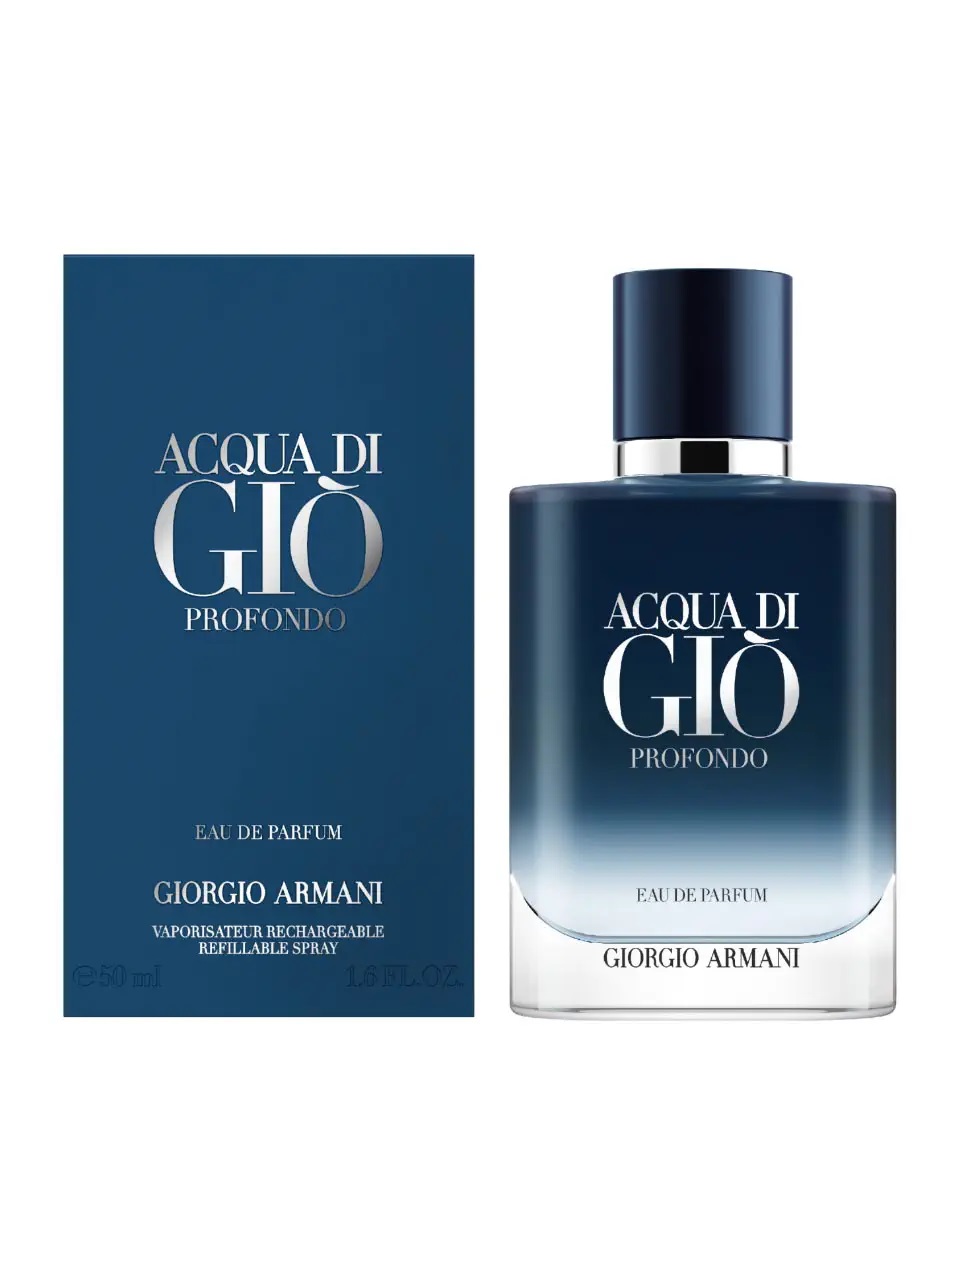 Giorgio Armani Acqua di Giò pour Homme Profondo Eau de Parfum Refillable 50 ml